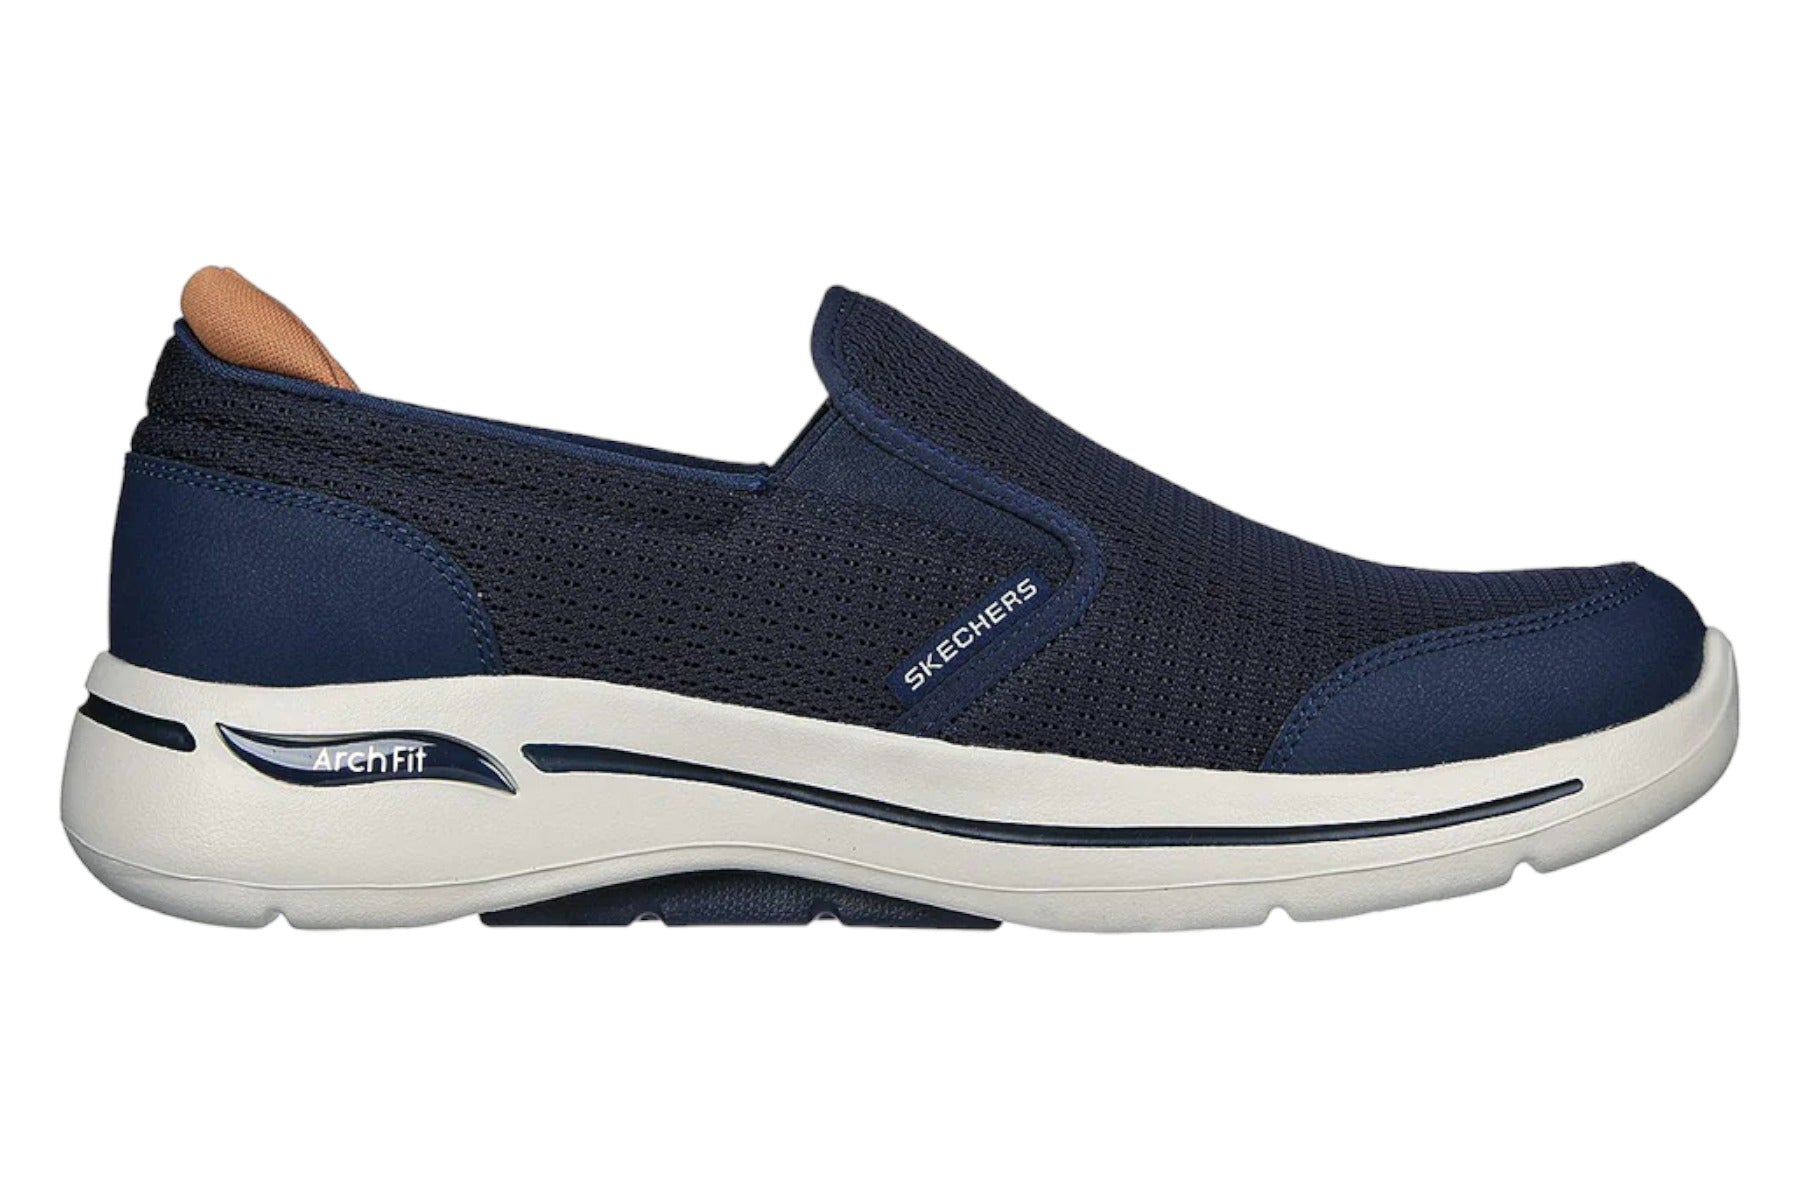 Skechers Go Walk Arch Fit Robust Comfort Sneaker - Men's